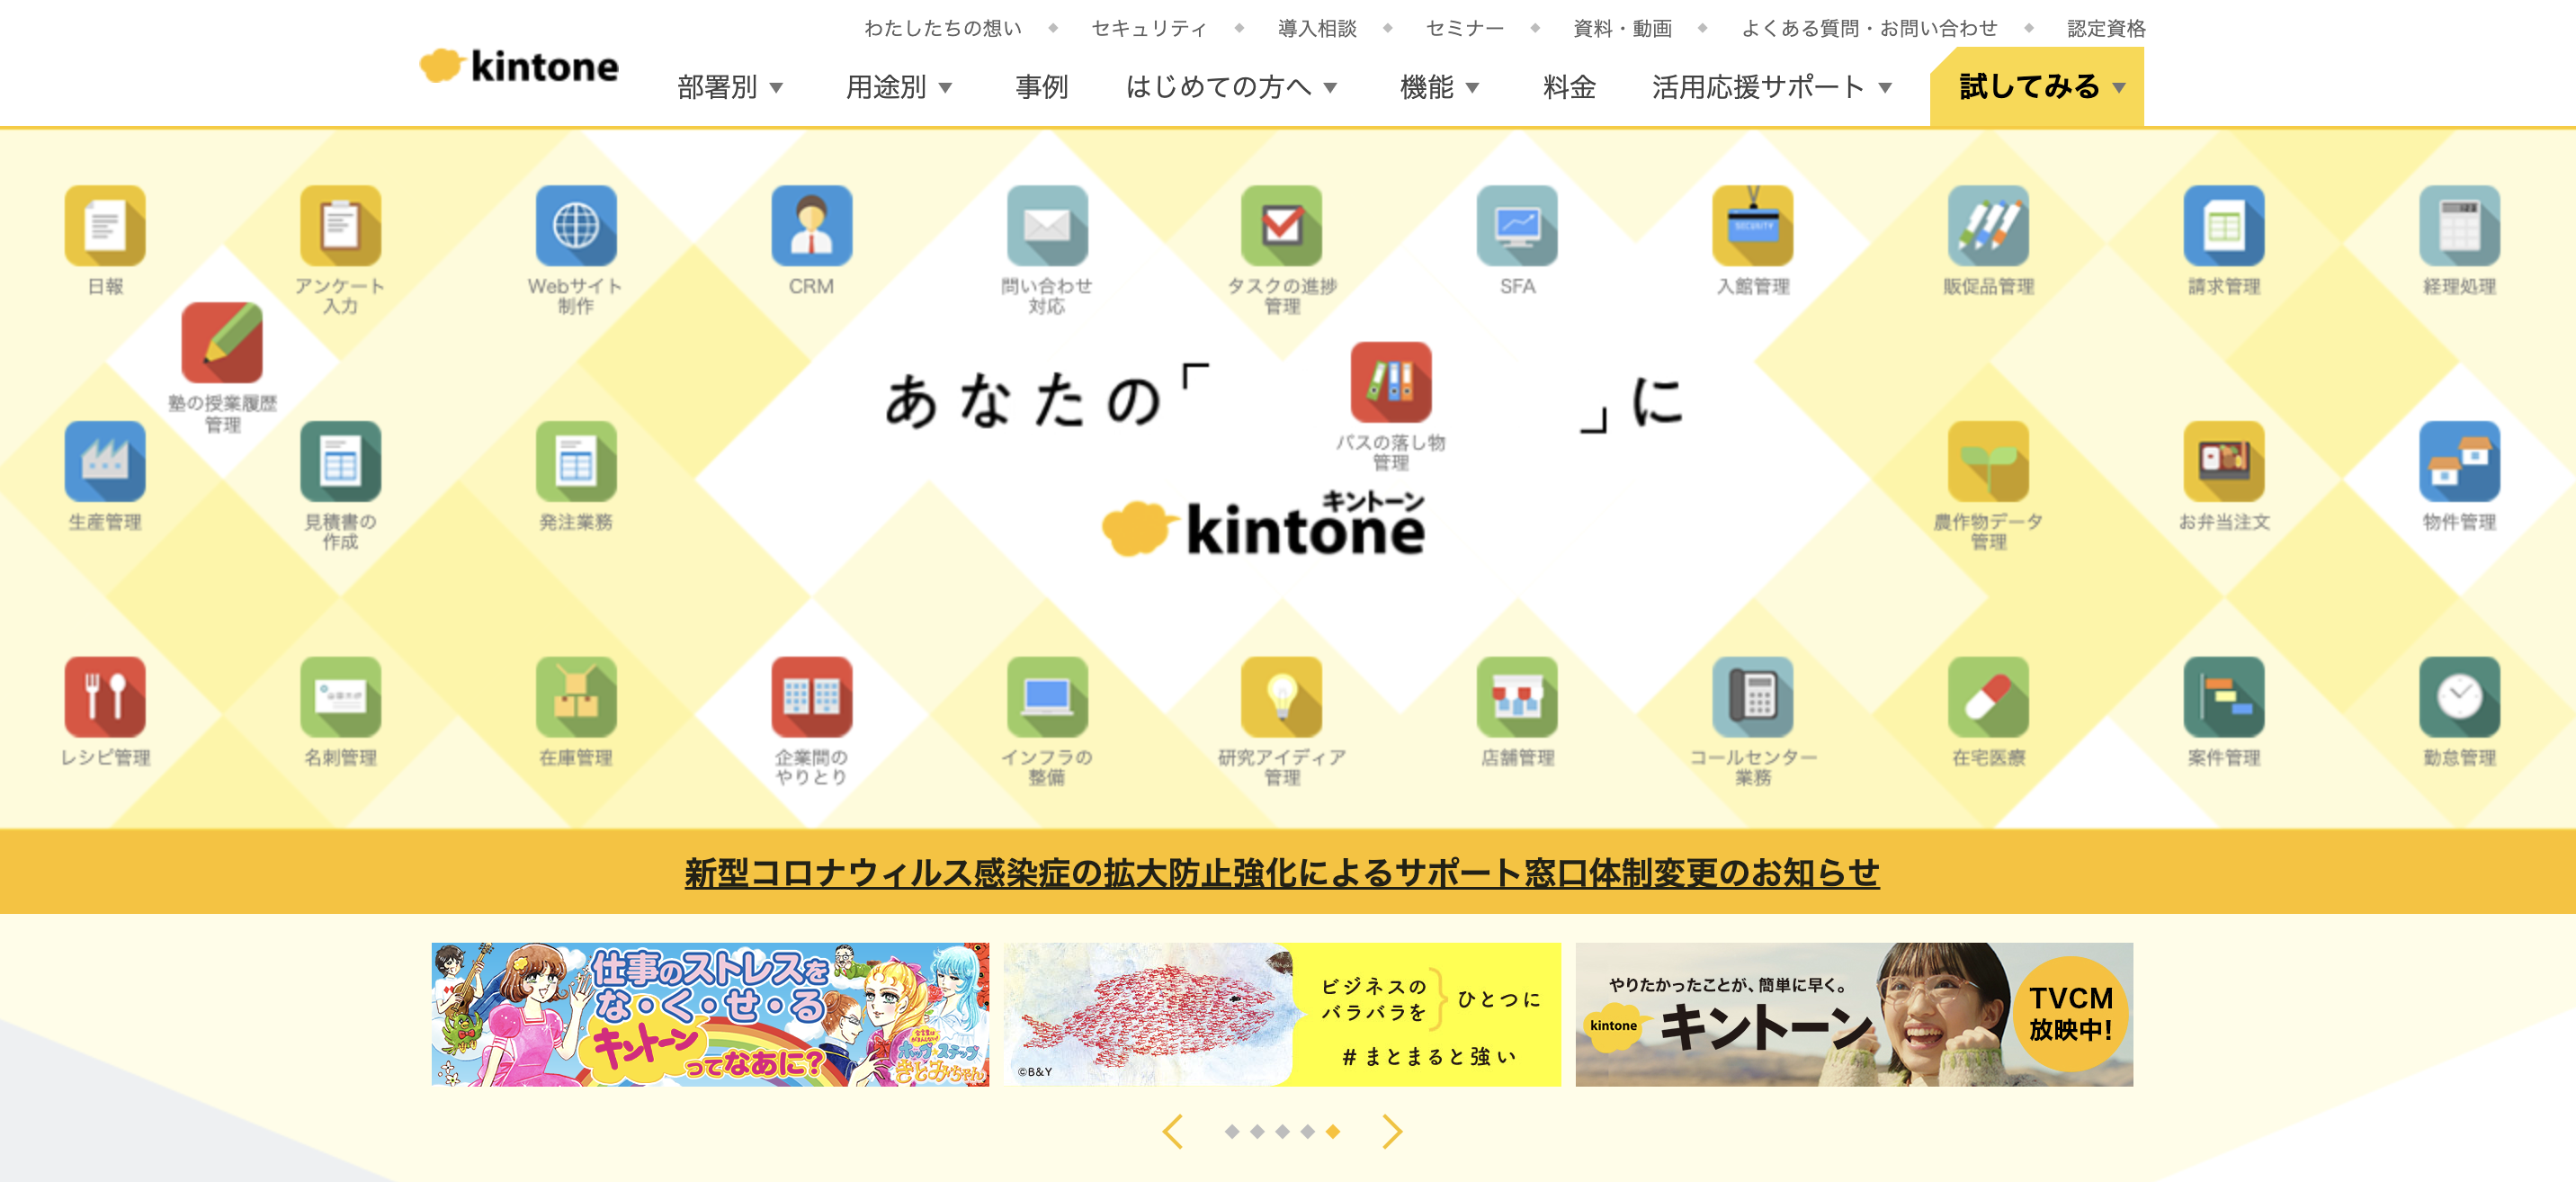 6.サイボウズ株式会社「kintone」